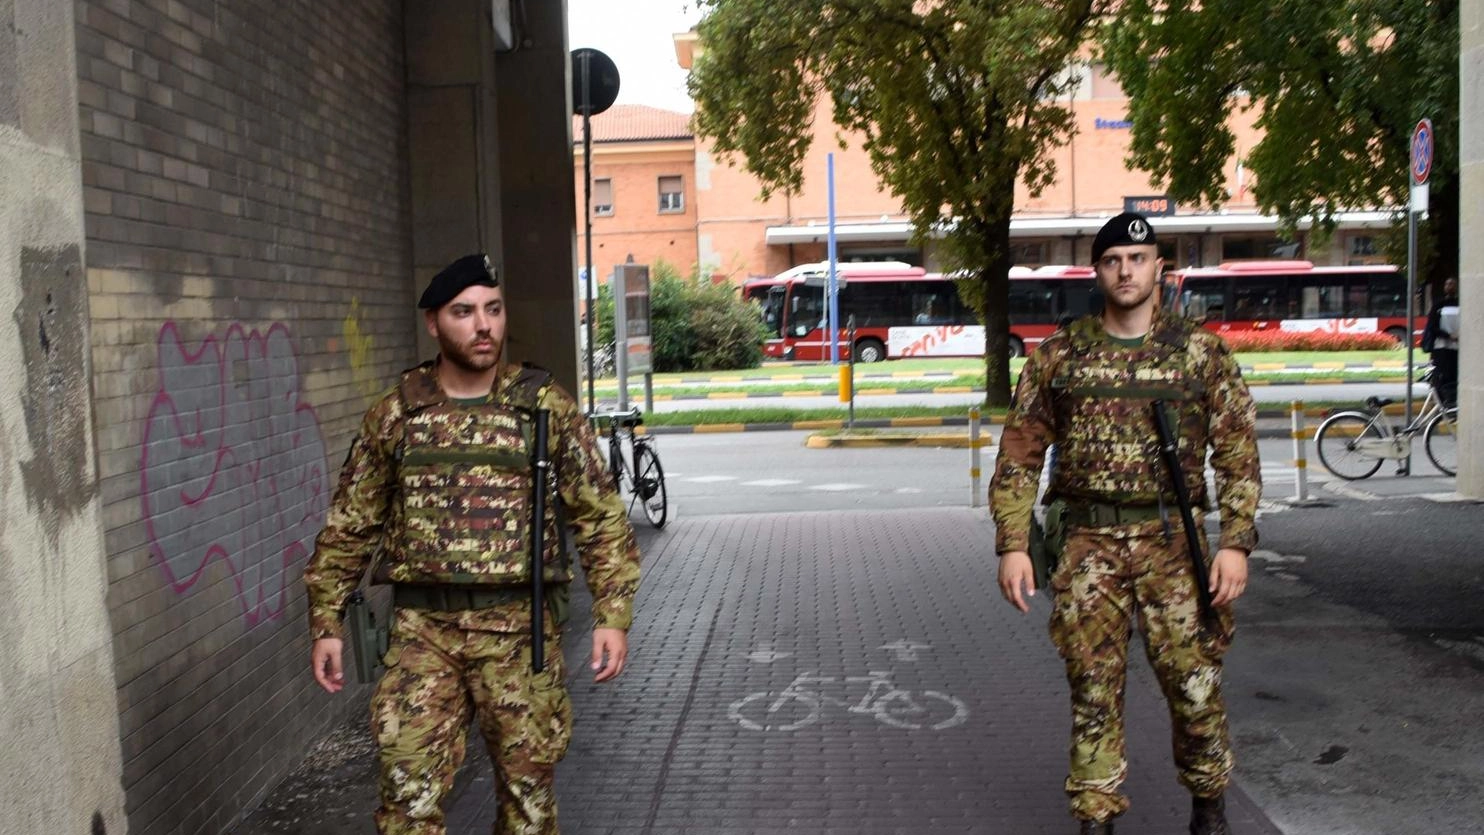 Zona stazione ‘sorvegliata speciale’. Esercito, servizi a piedi al Gad: "Un deterrente, non molliamo"